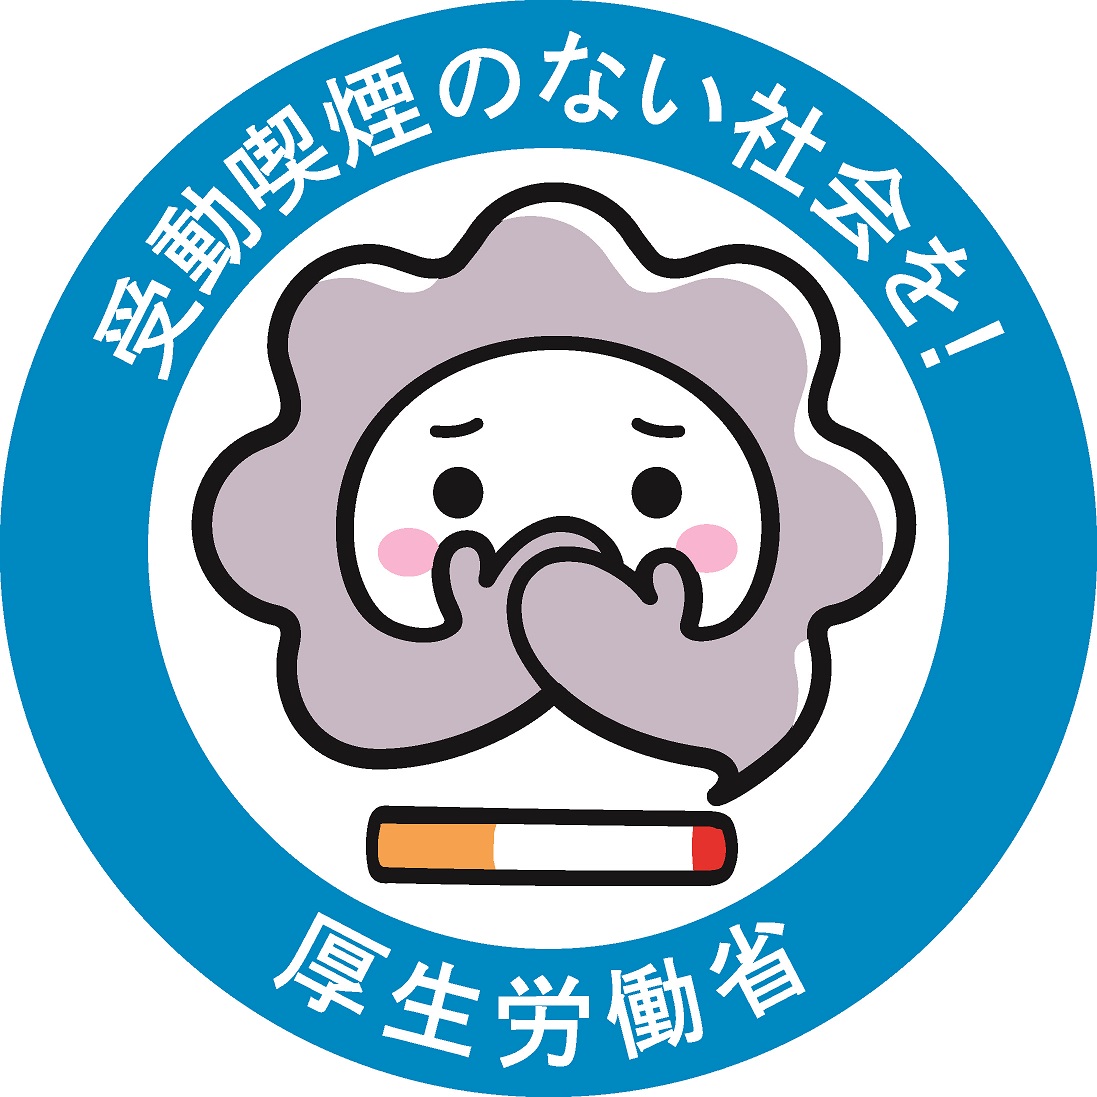 受動喫煙防止 タバコ対策の報道 動きの紹介